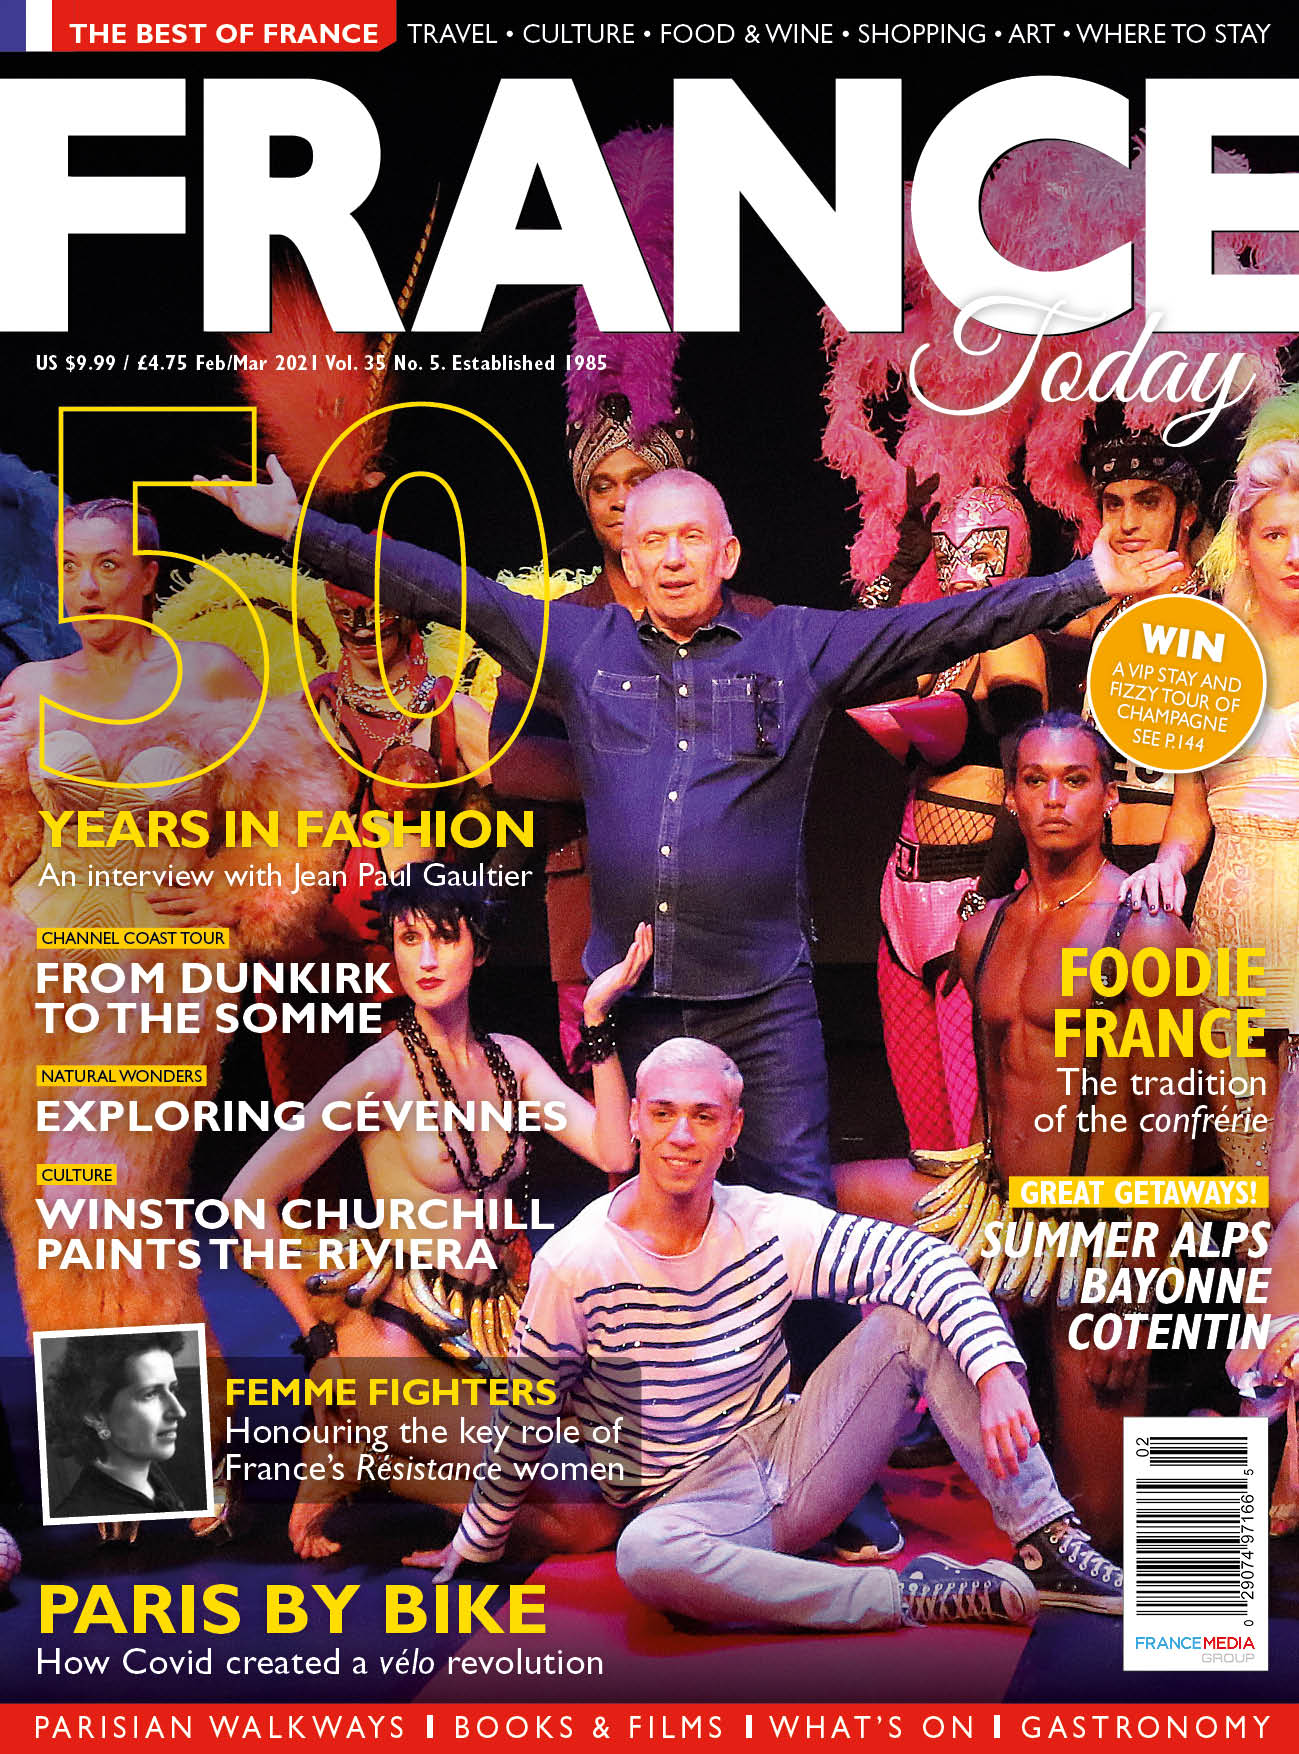 Issue 181 (Feb/Mar 2021)